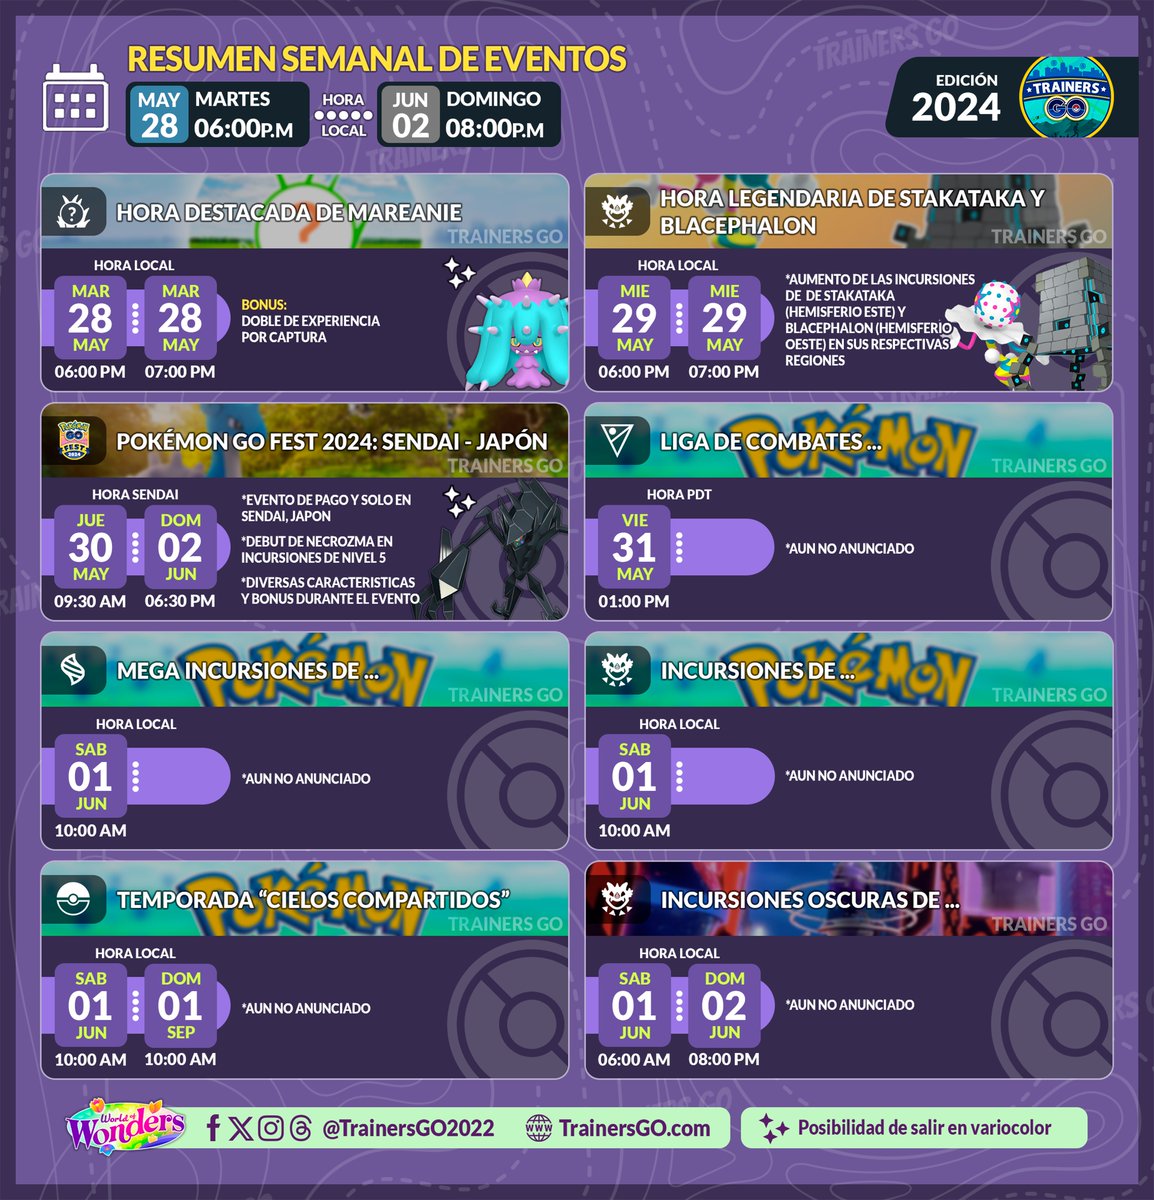 🥳Trainers, ahí les dejamos la infografía de la lista de eventos para la semana que viene en #PokemonGO.   

▶️Aquí pueden ver más eventos:        
trainersgo.com/events/ 

#pokemongoapp #niantic #pgsharp #TimelessTravels #trainersgo #worldofwonders